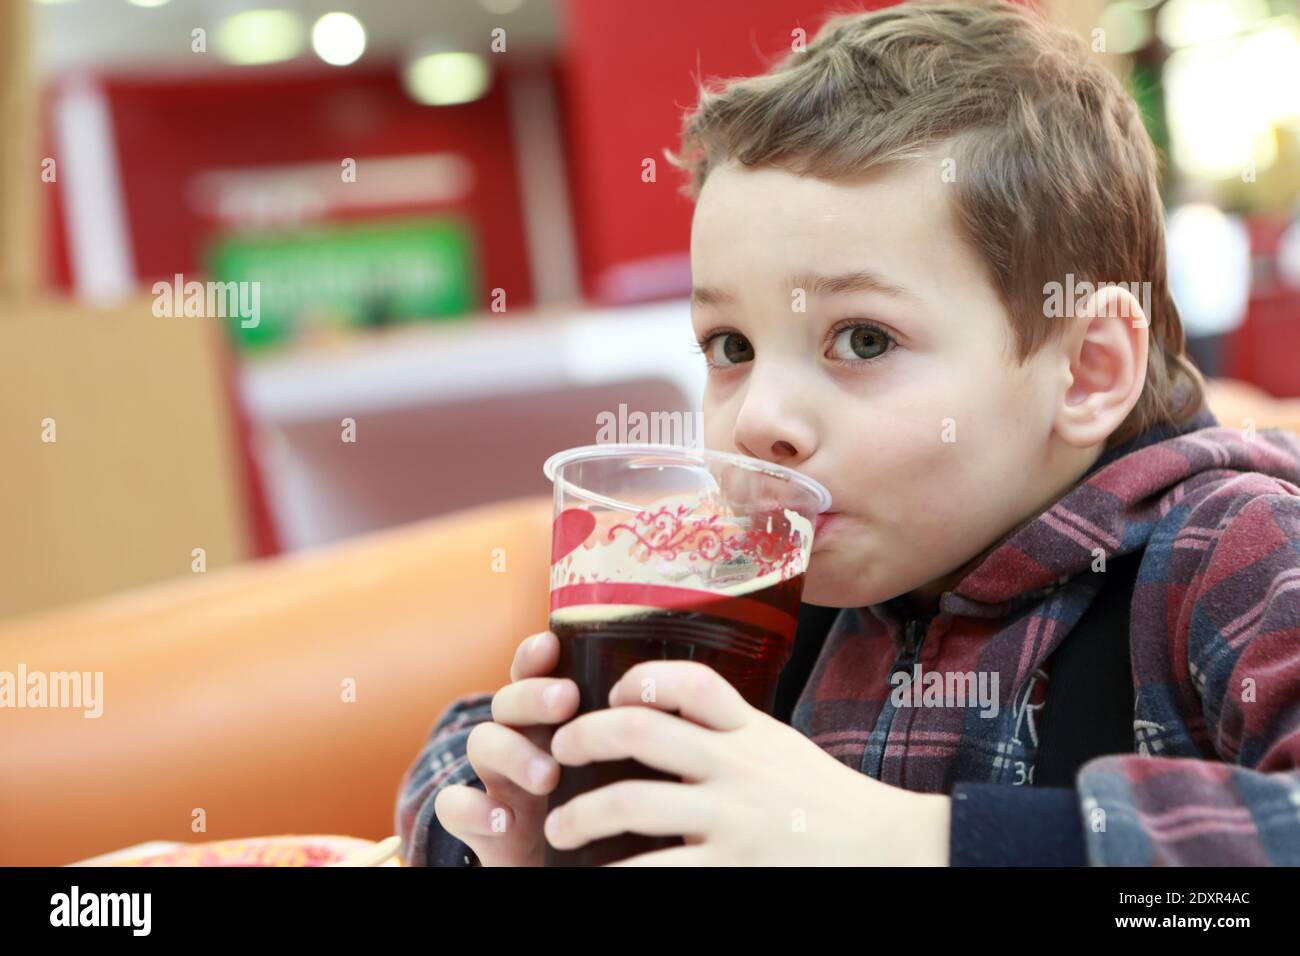 Квас можно пить детям. Дети пьют квас. Мальчик пьет квас. Малыш пьет квас. Мальчик с квасом.